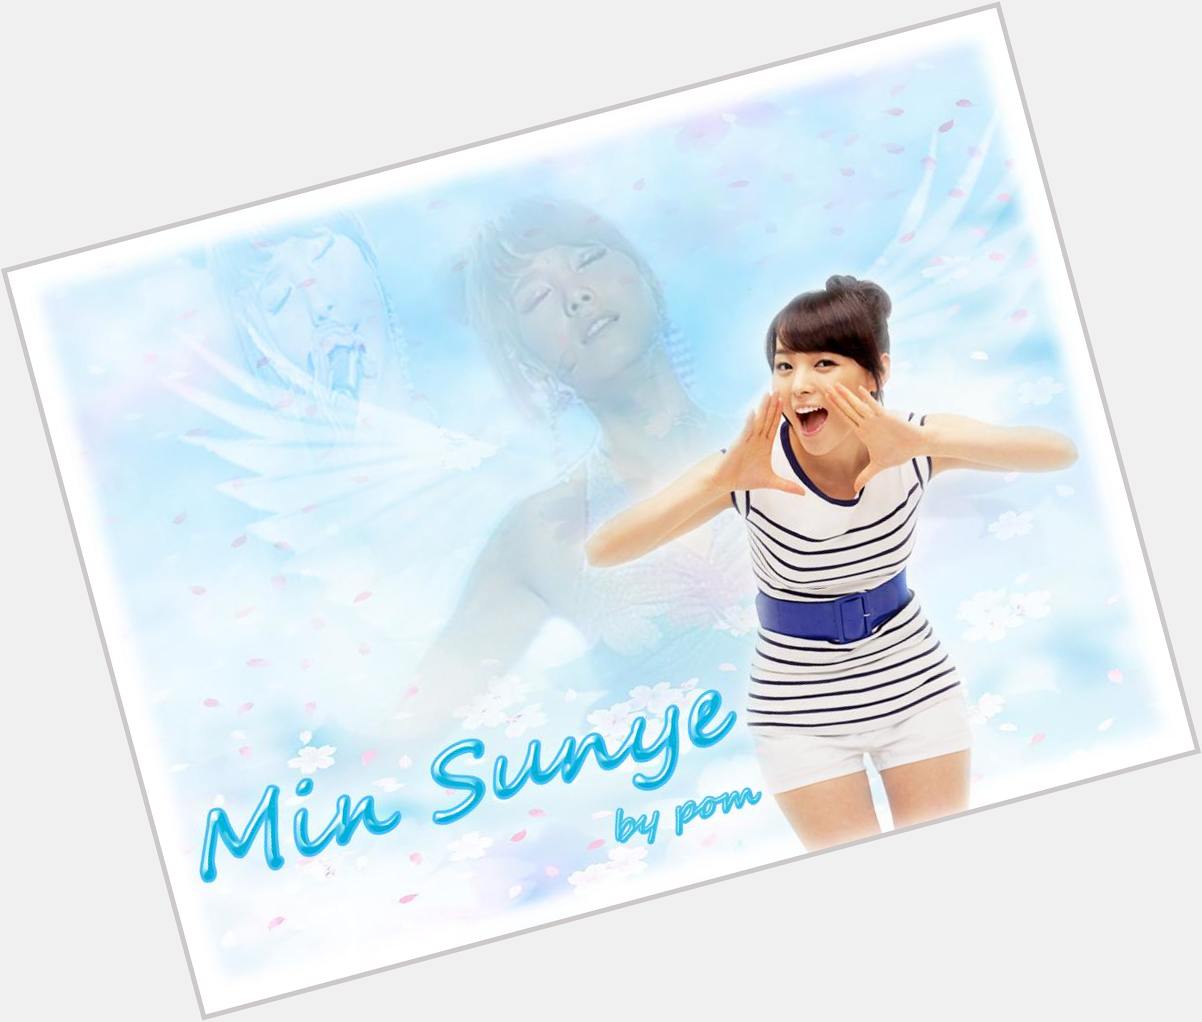 Sunye Min new pic 3